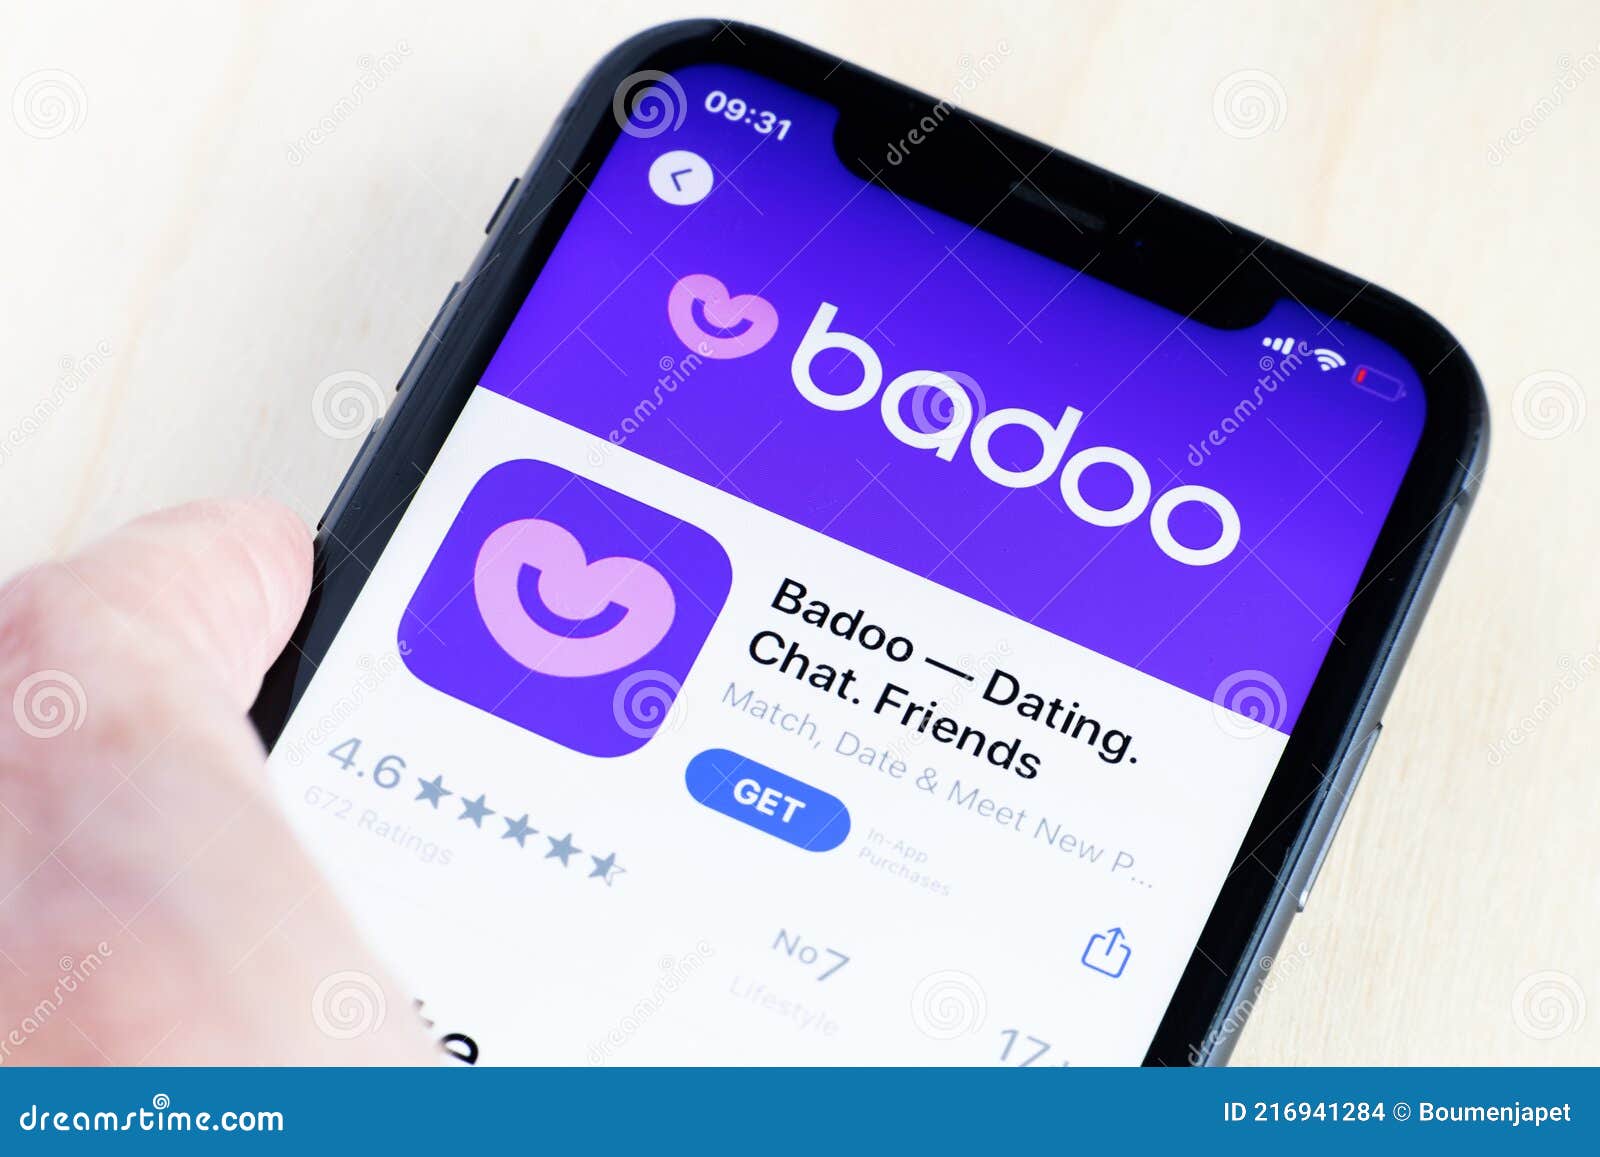 Meet people badoo new ‎Badoo Premium